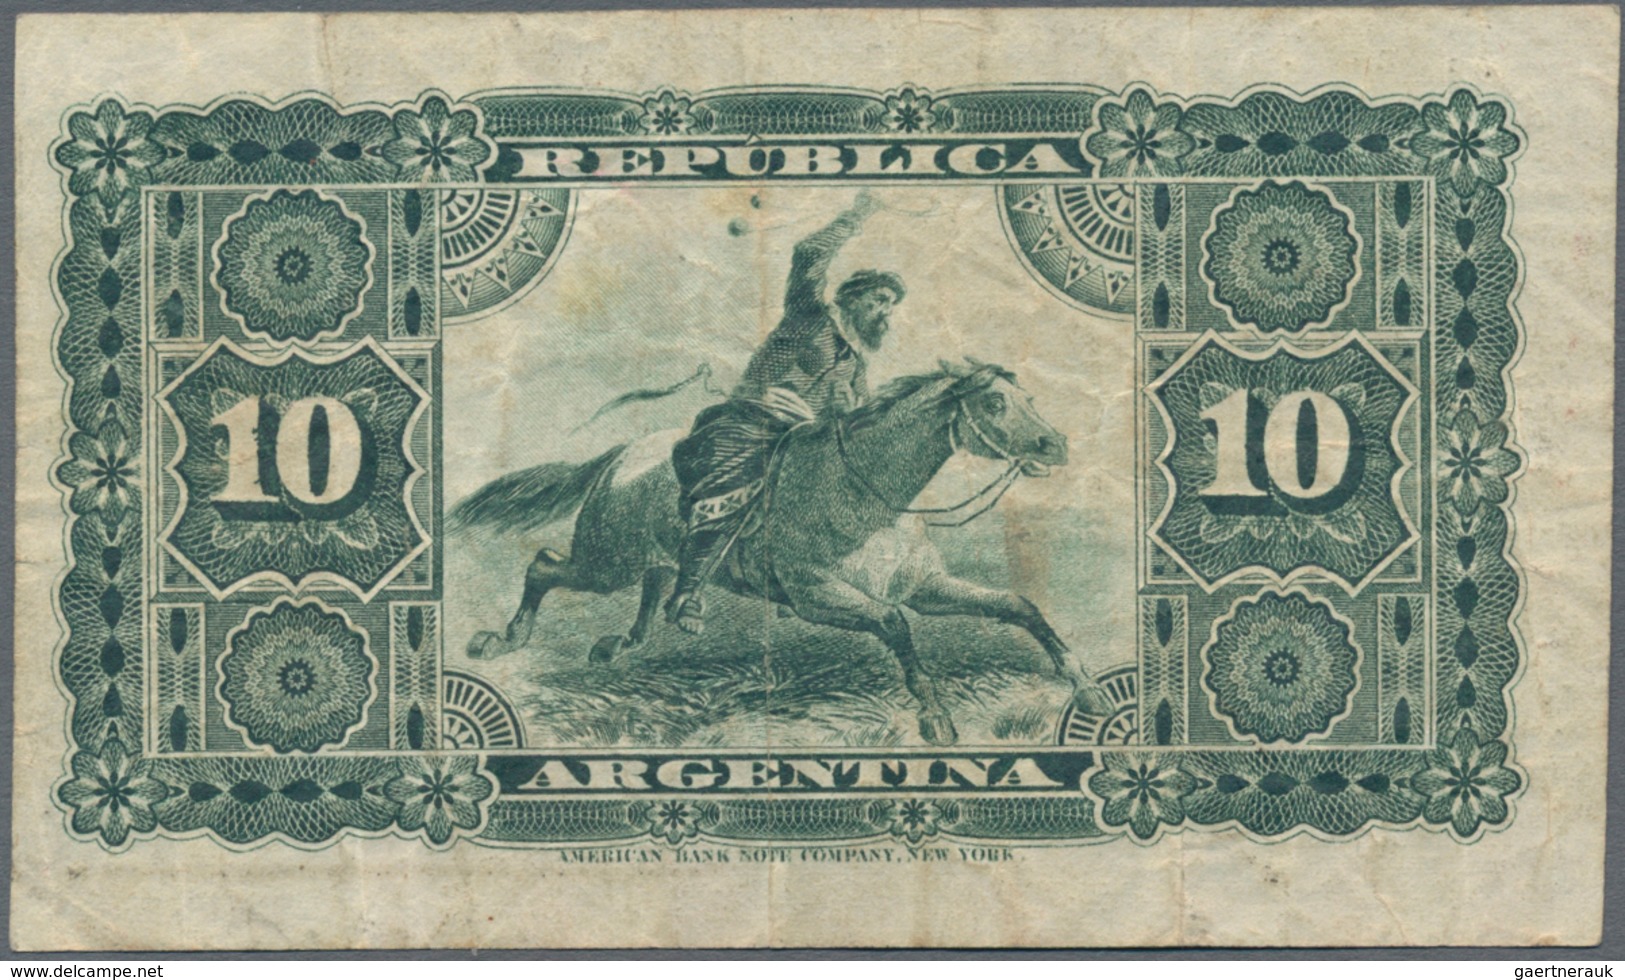 Argentina / Argentinien: 10 Pesos 1866 P.S1527 (VG) And 10 Centavos 1884 P.6 (F+). (2 Pcs.) - Argentinien